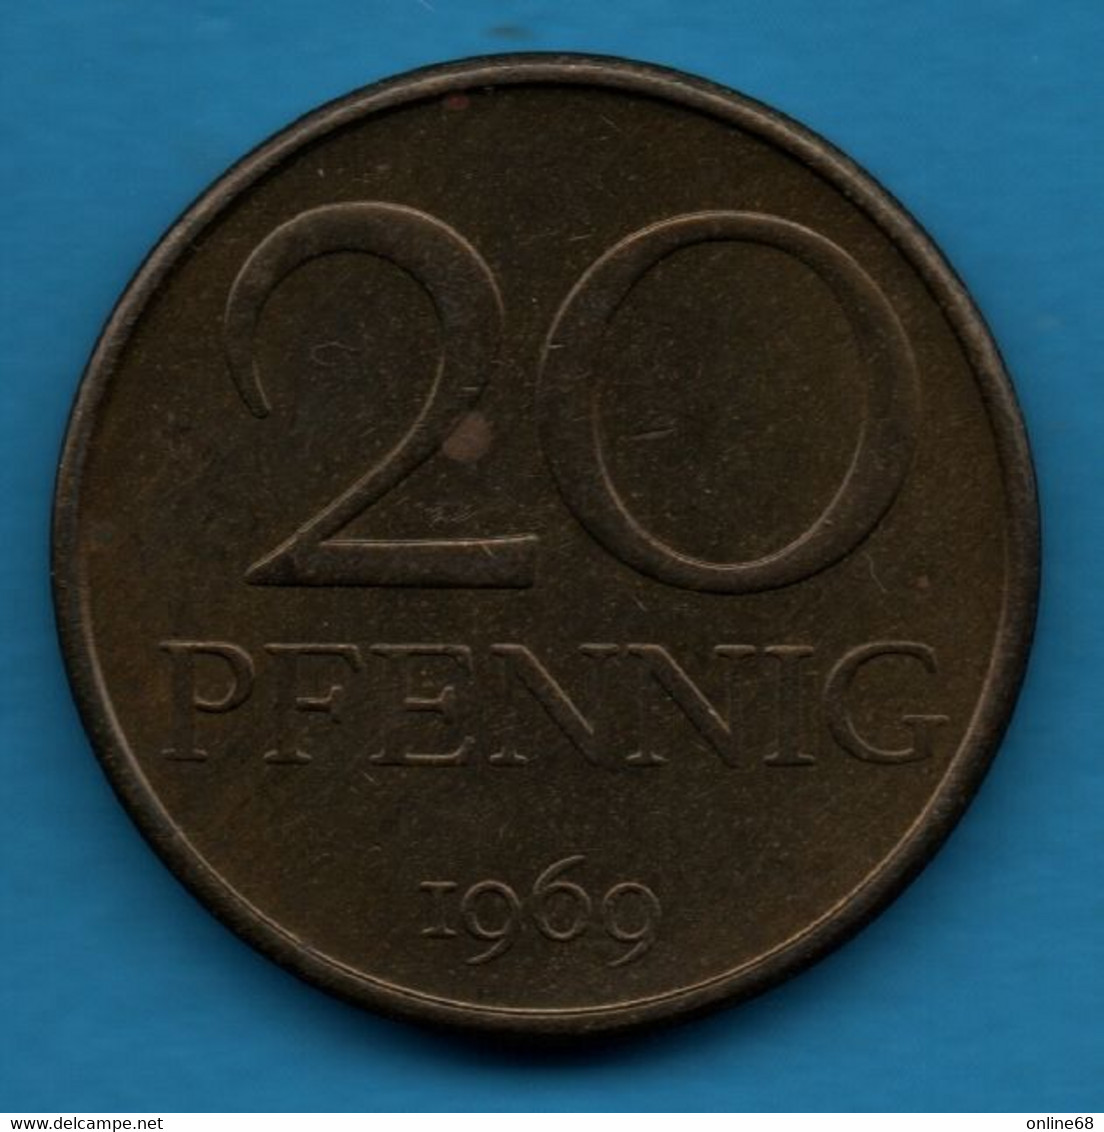 DDR RDA 20 PFENNIG 1969 KM# 11 - 20 Pfennig